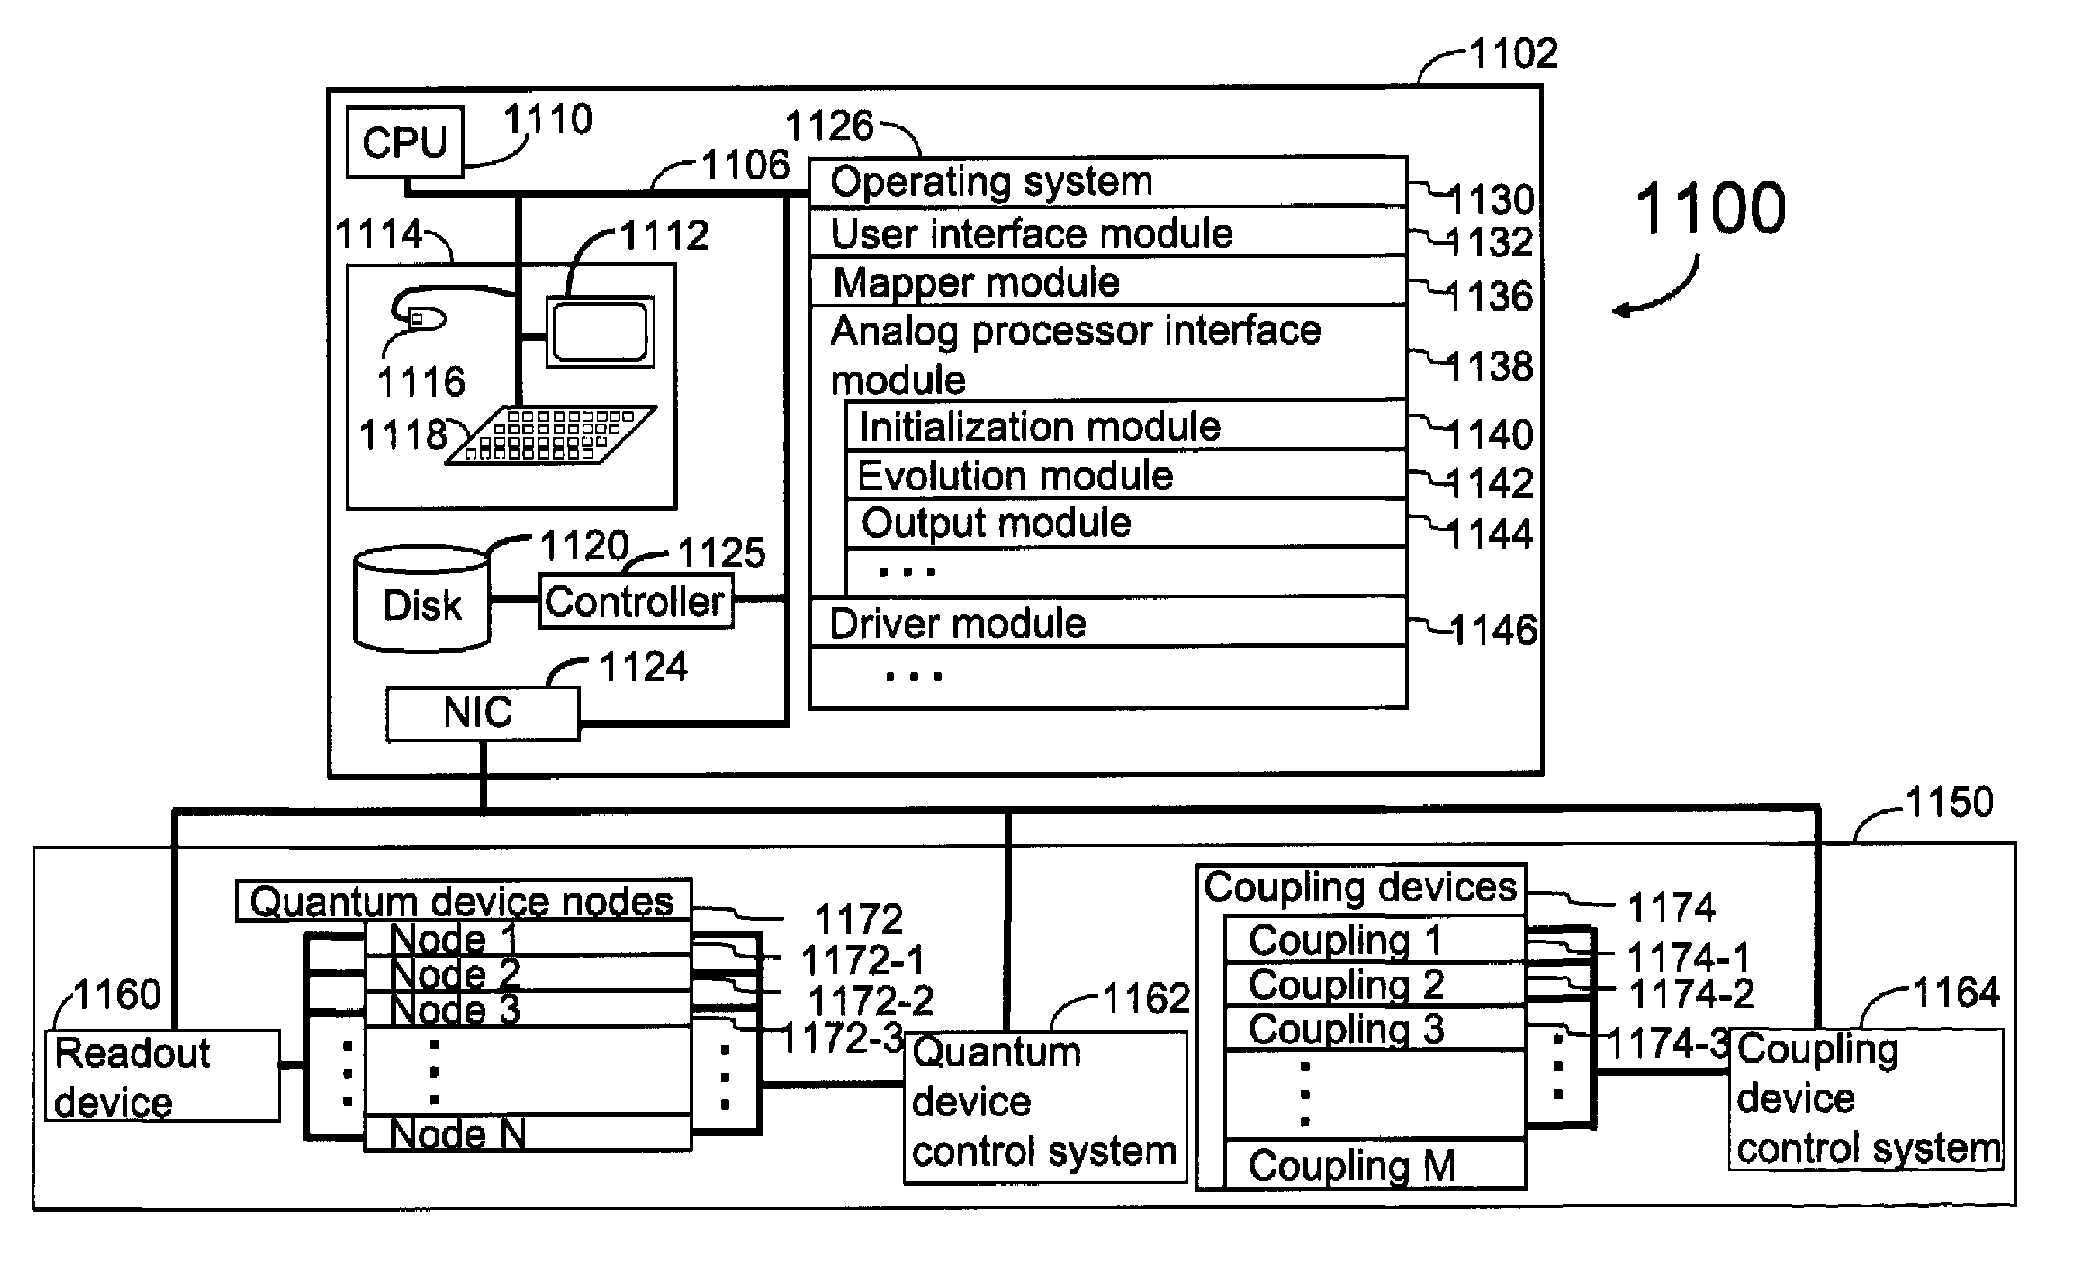 Analog processor comprising quantum devices